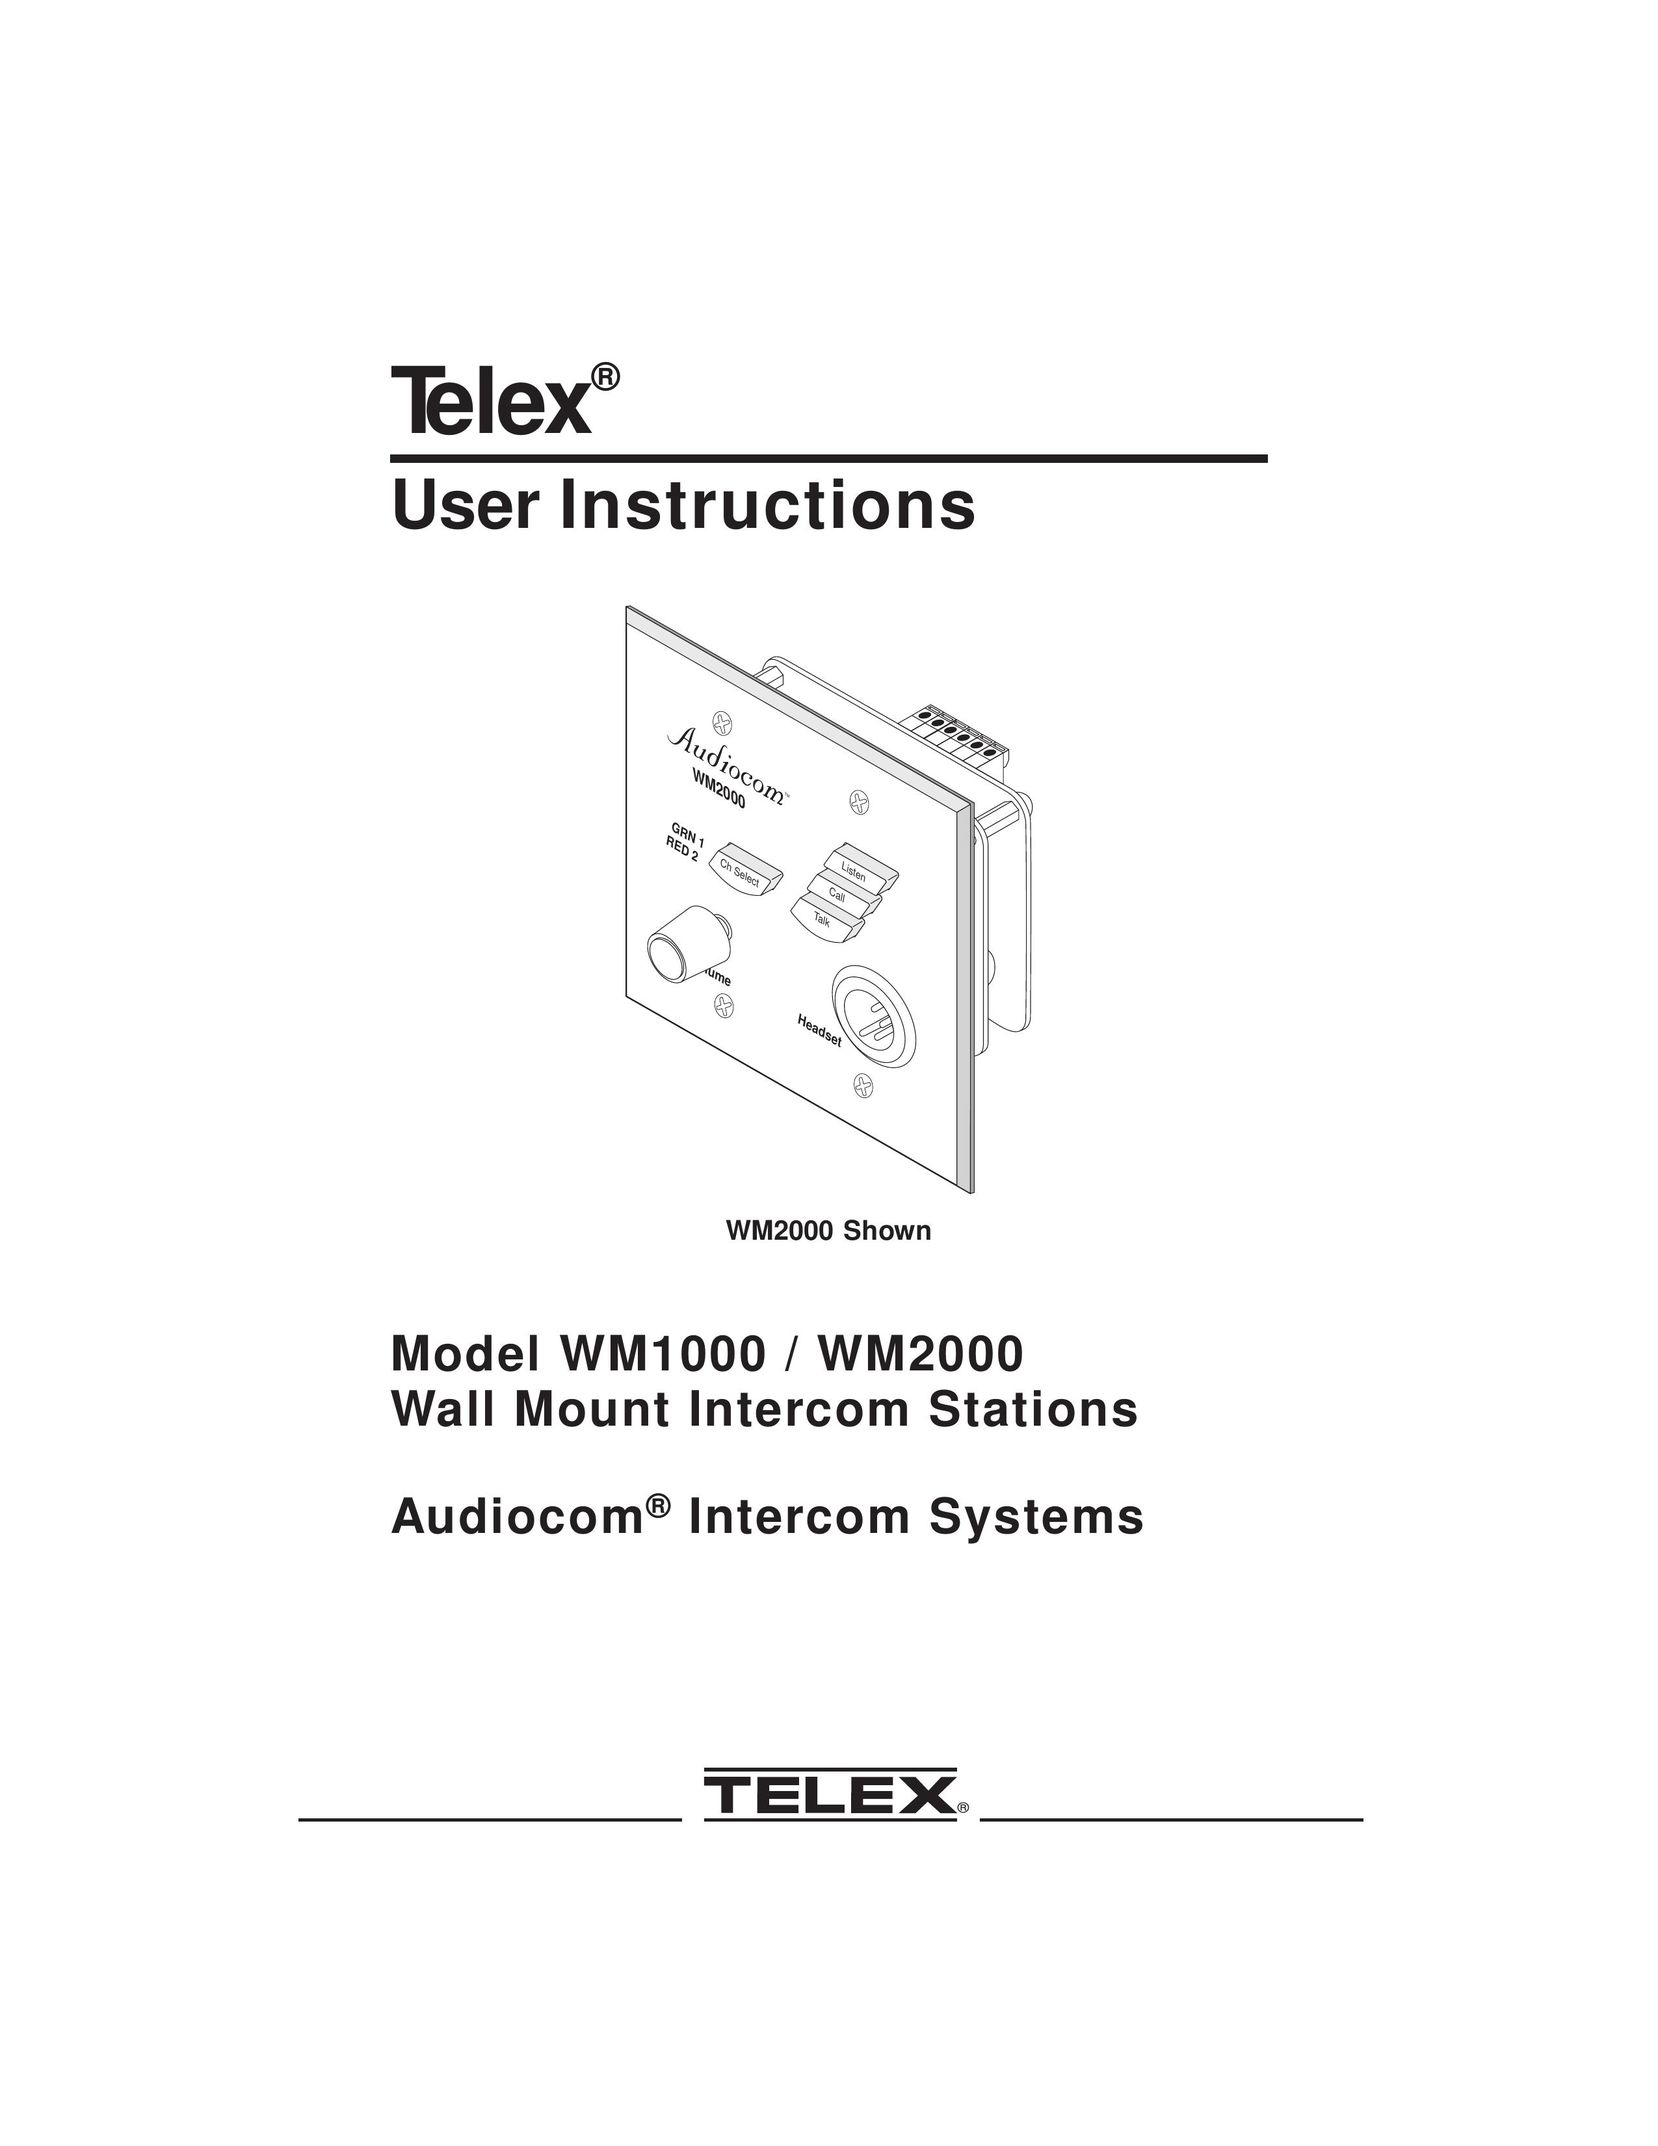 Telex WM2000 Intercom System User Manual